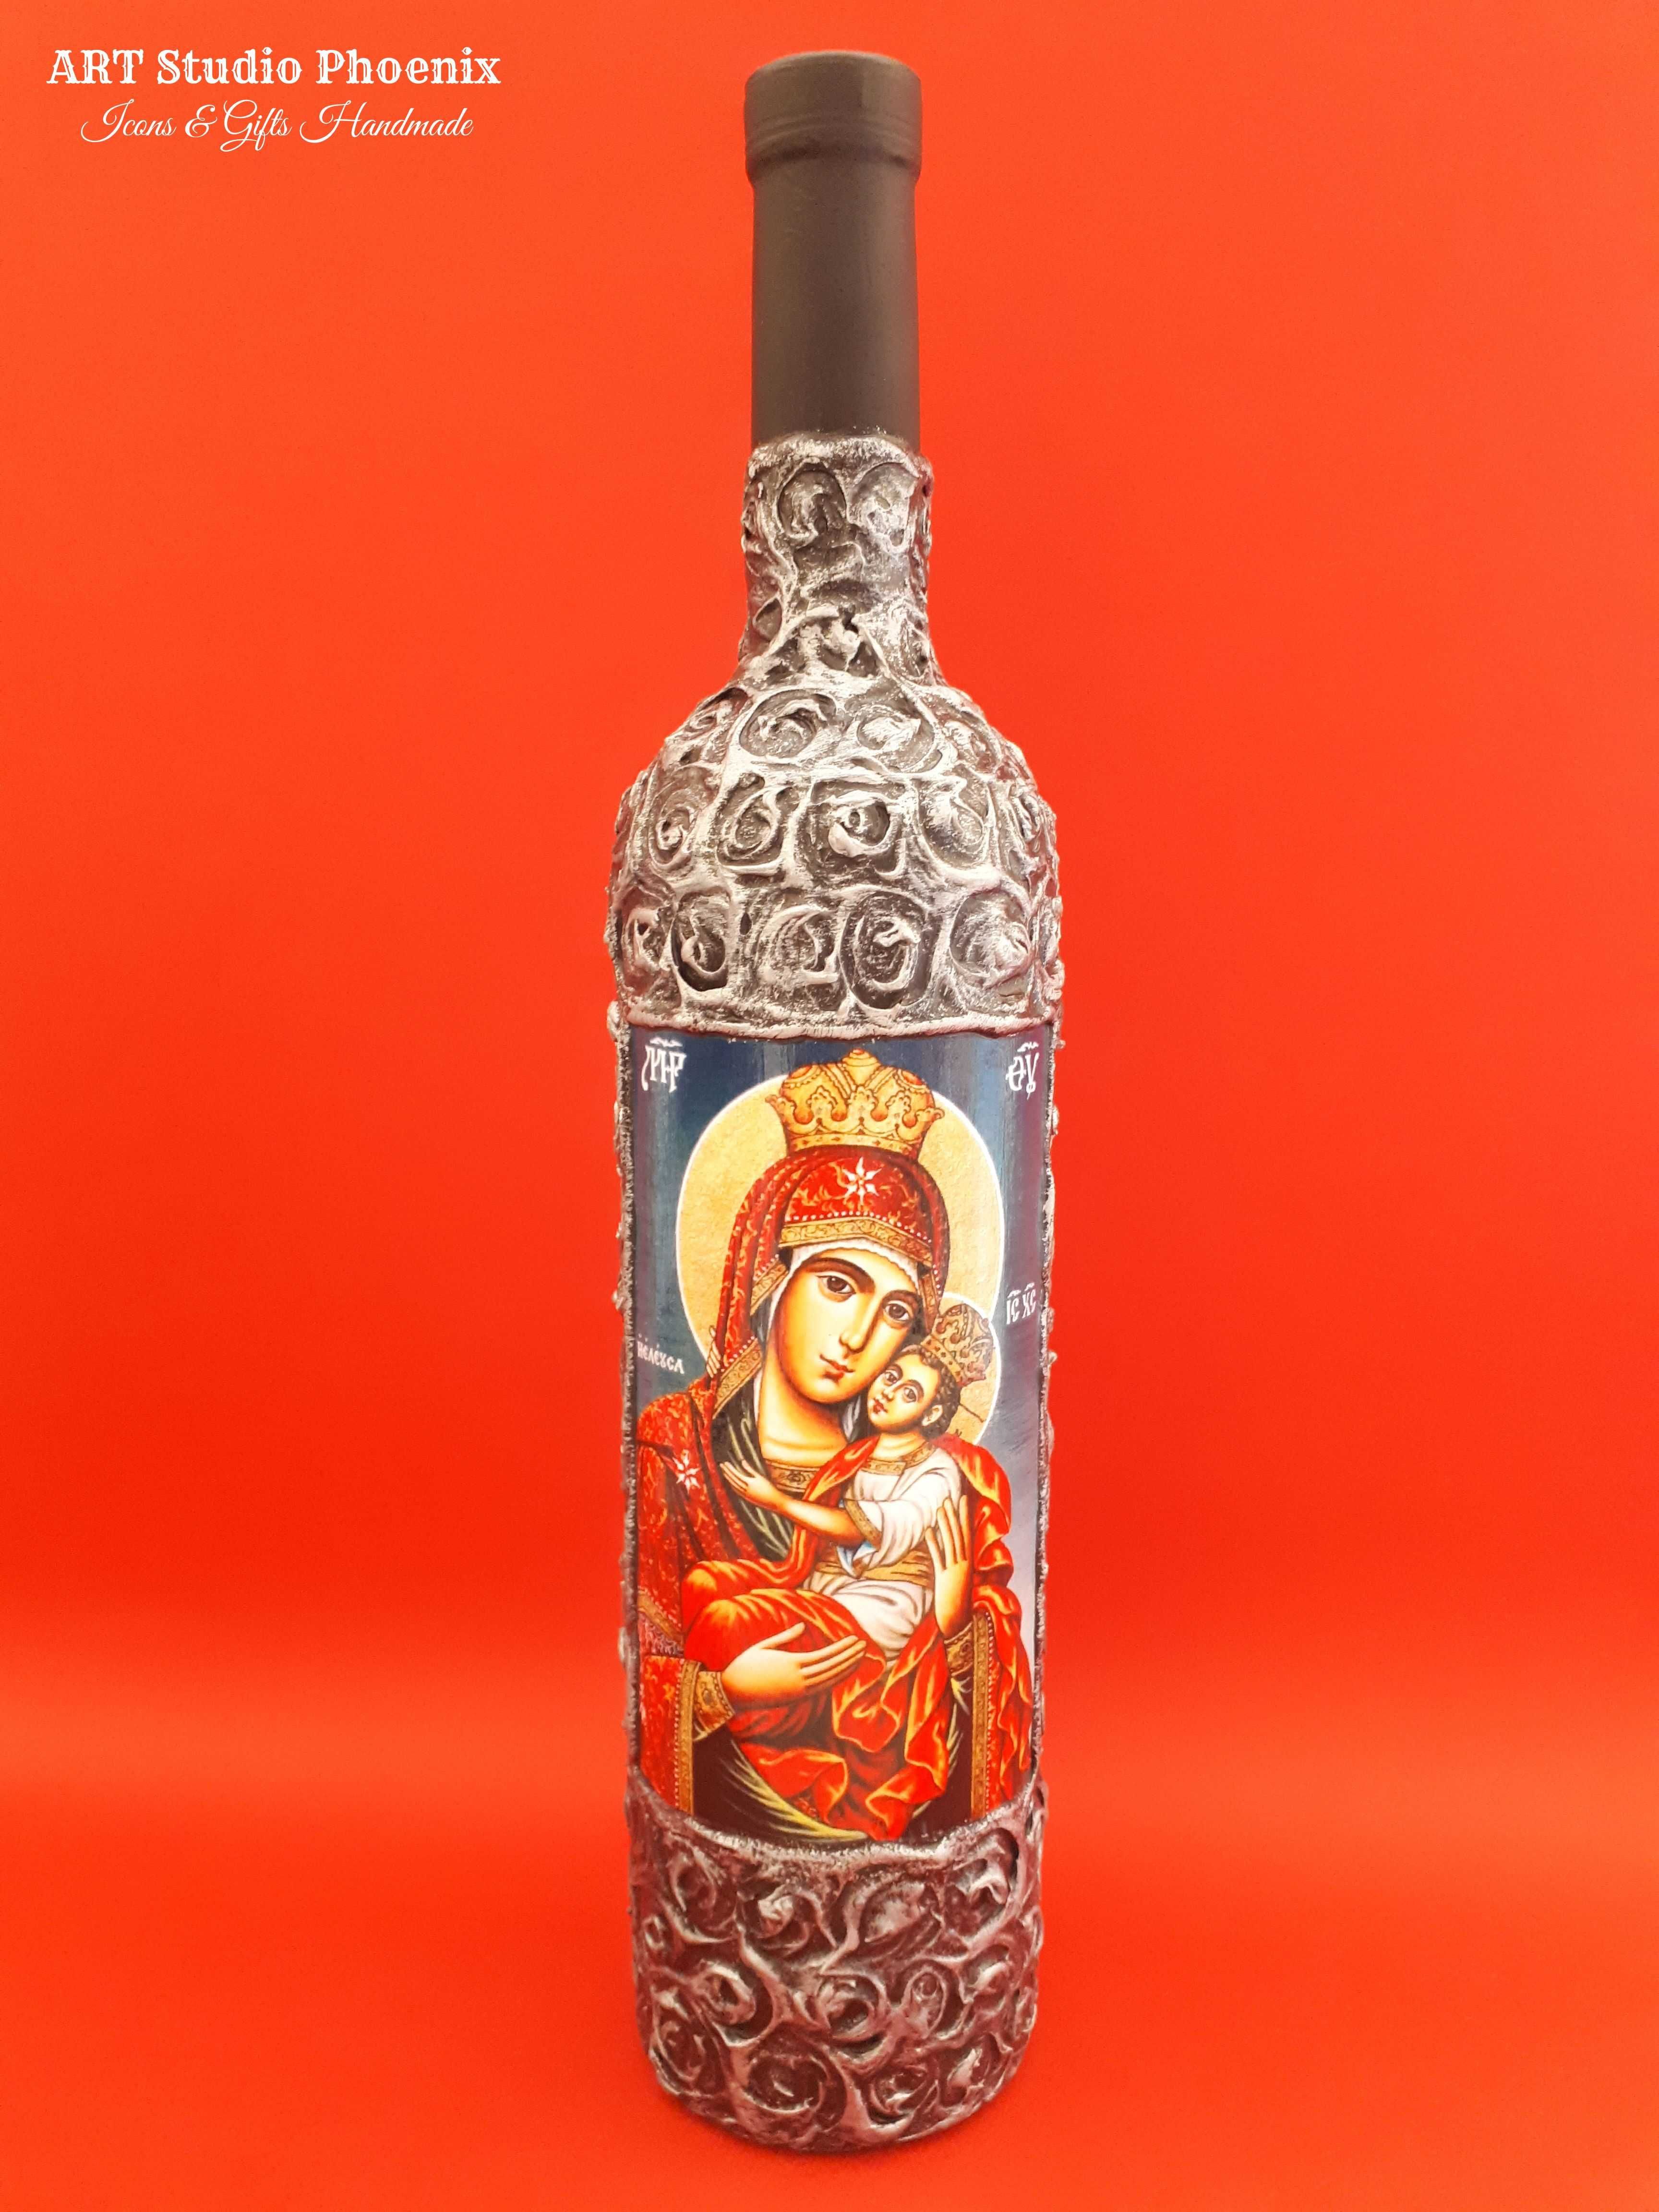 Икона на Света Богородица ikona sveta bogorodica